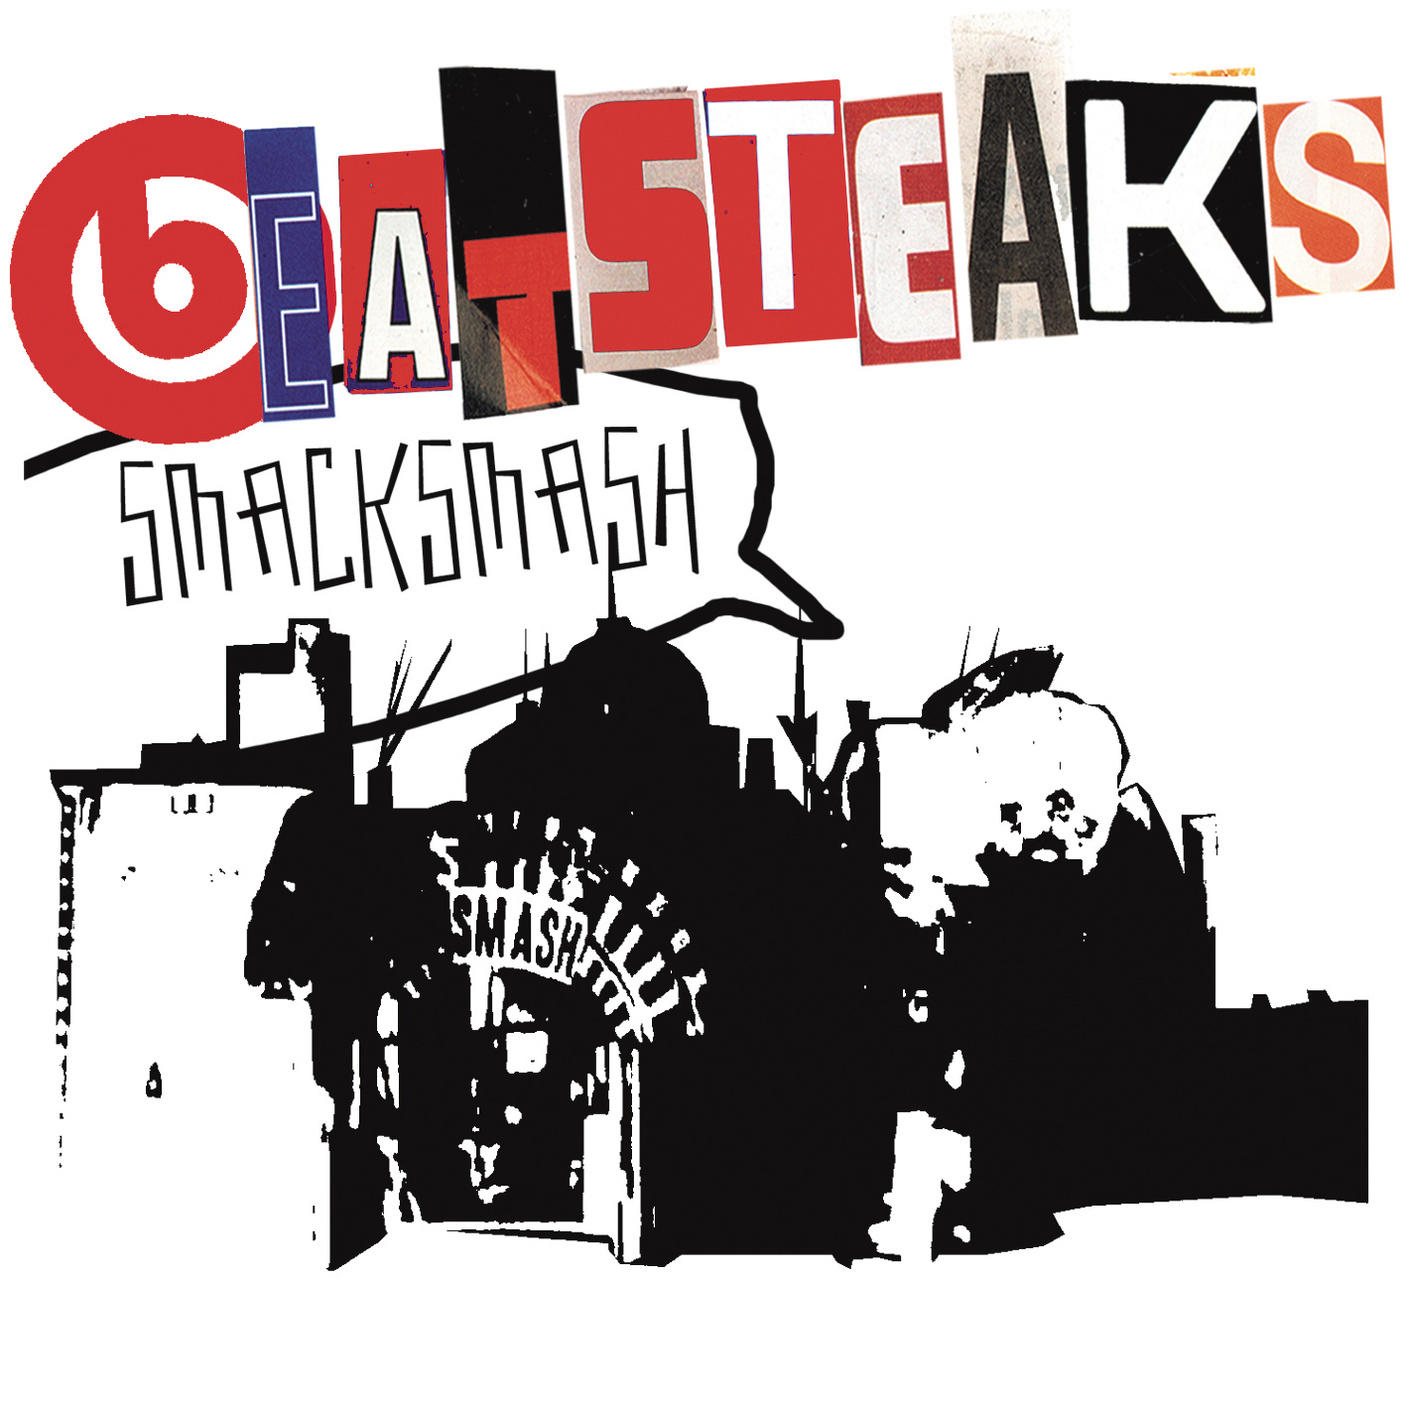 Beatsteaks - Smack - Smash (CD)